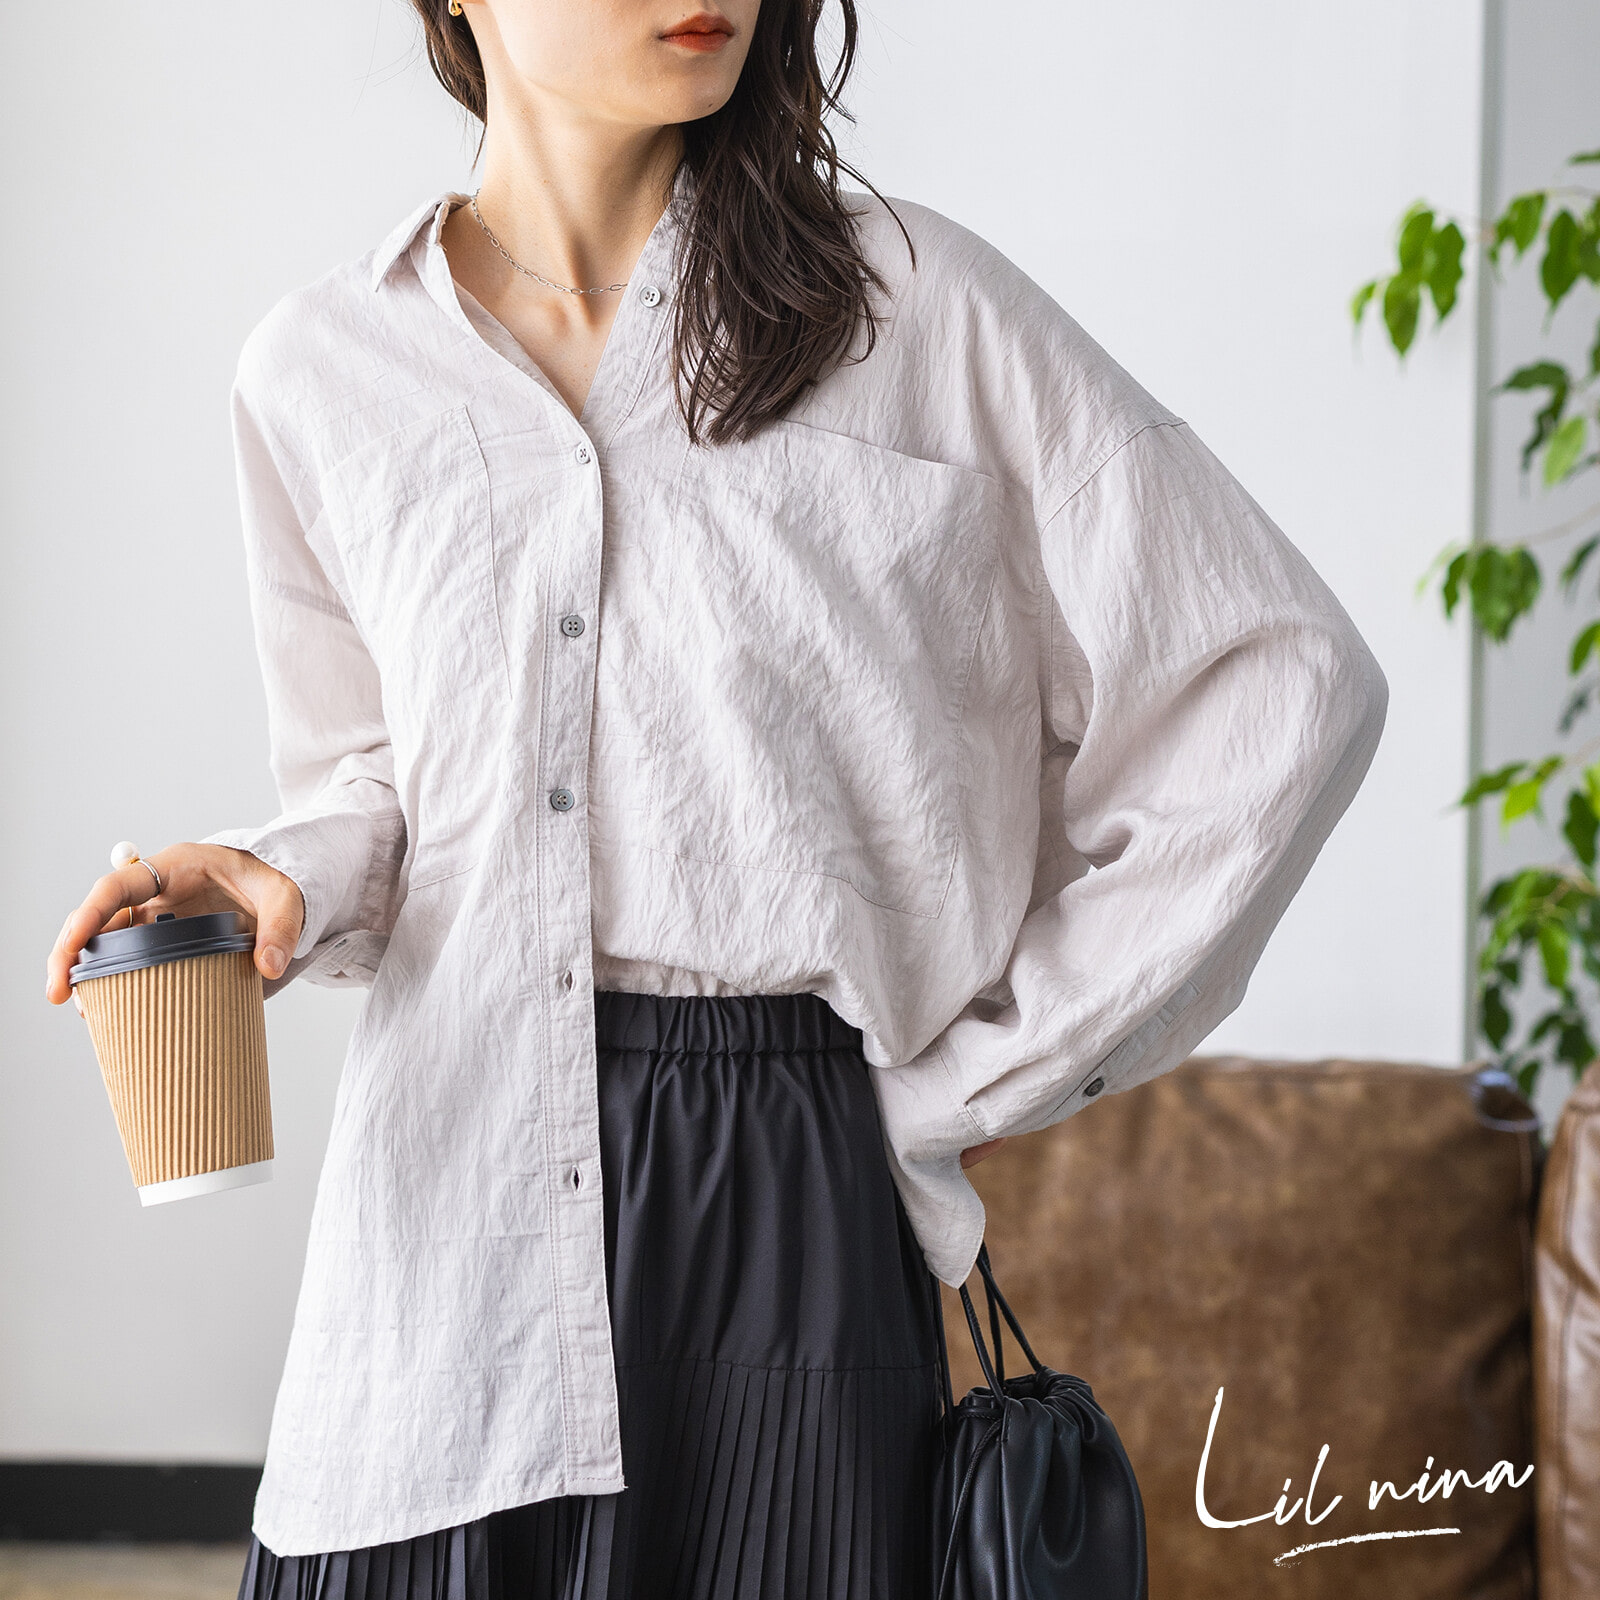 Lil nina : 특별한 소재 시원한 촉감의 오버핏 셔츠(2컬러)